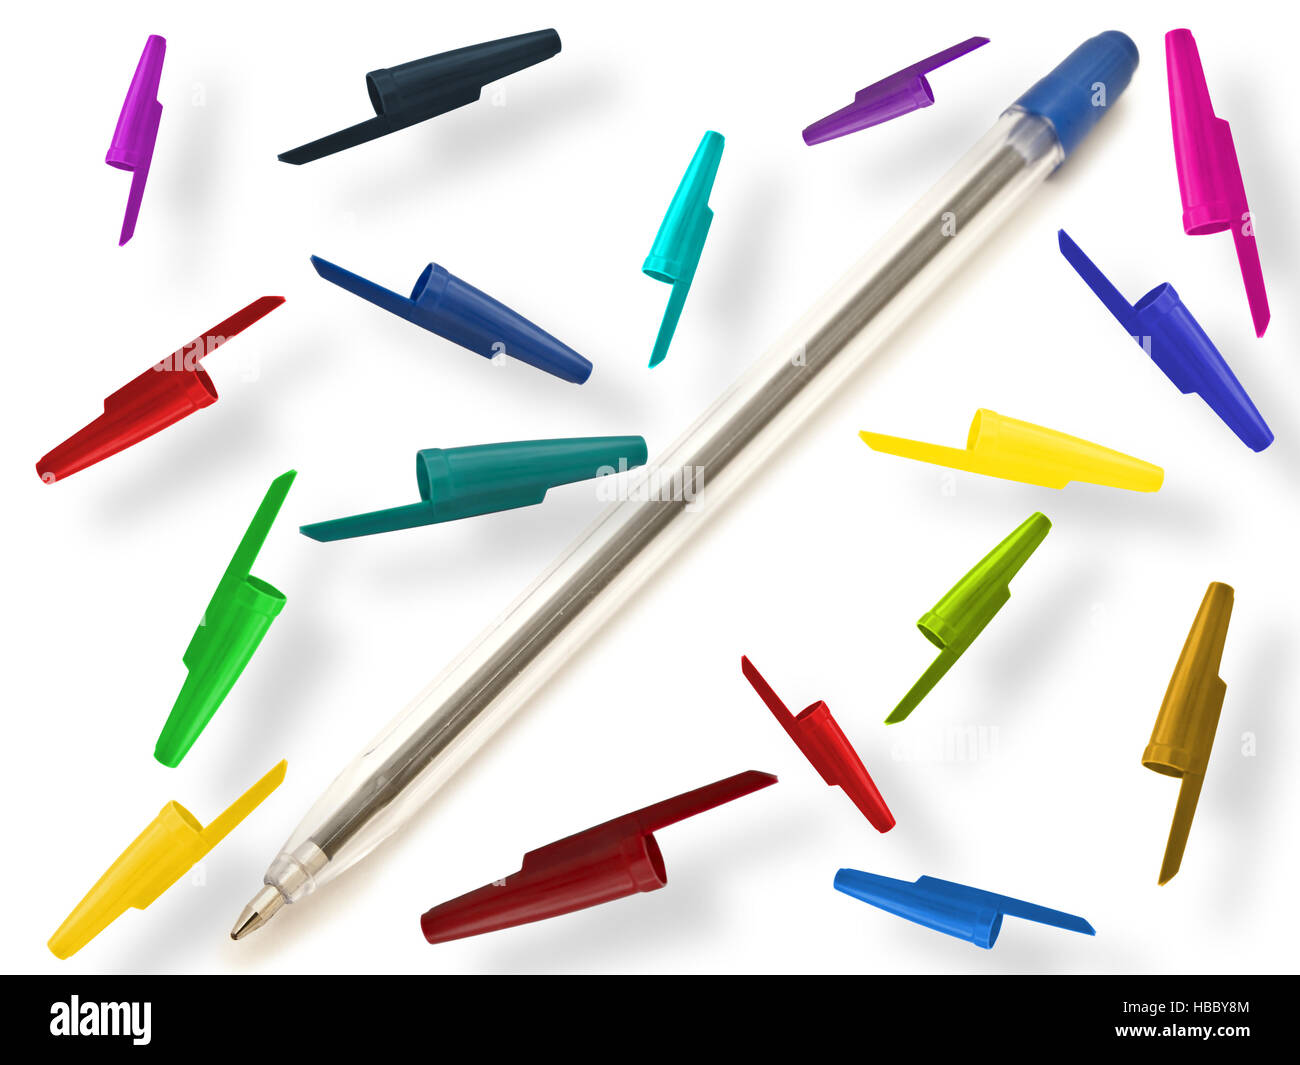 Penna multicolore immagini e fotografie stock ad alta risoluzione - Alamy